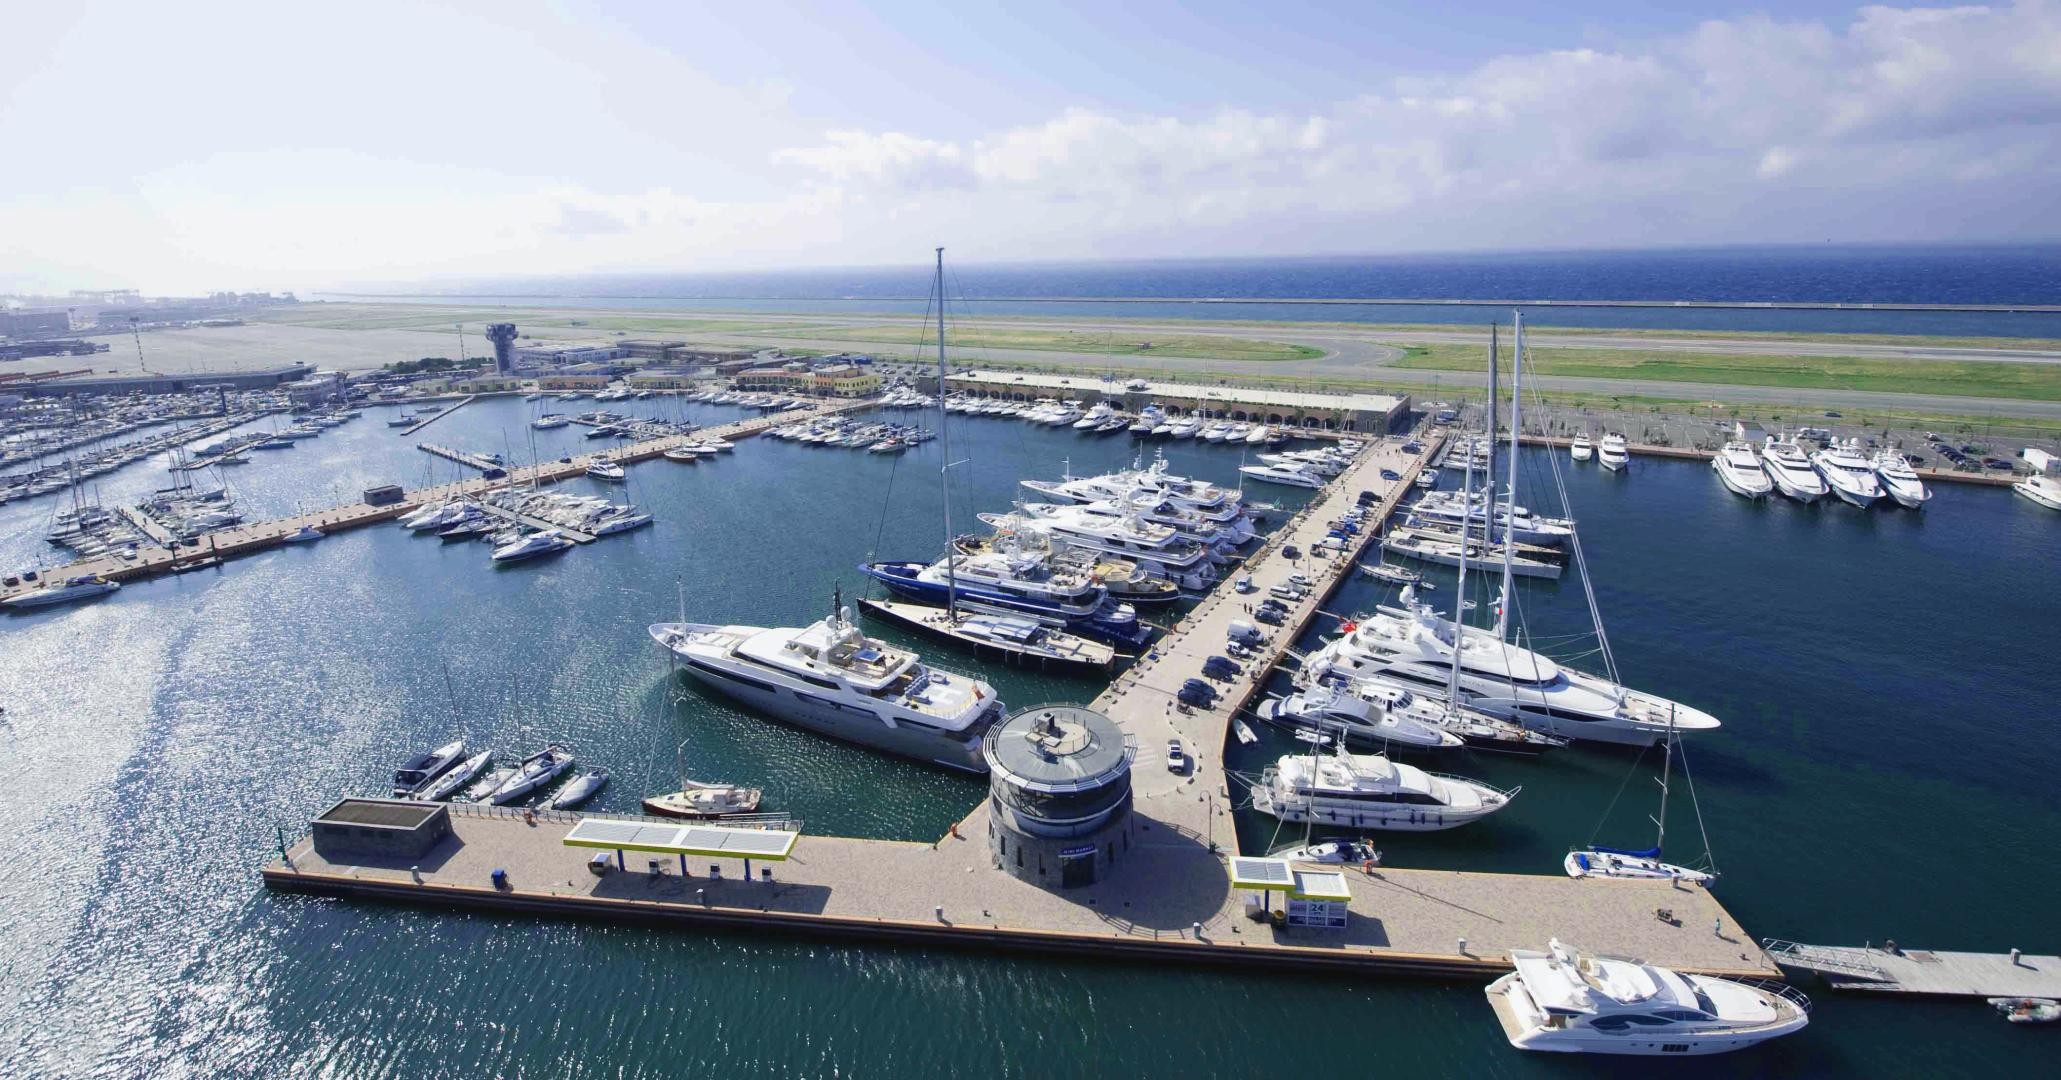 Marina Genova ottiene la certificazione MaRINA Excellence, per porti che offrono i servizi migliori